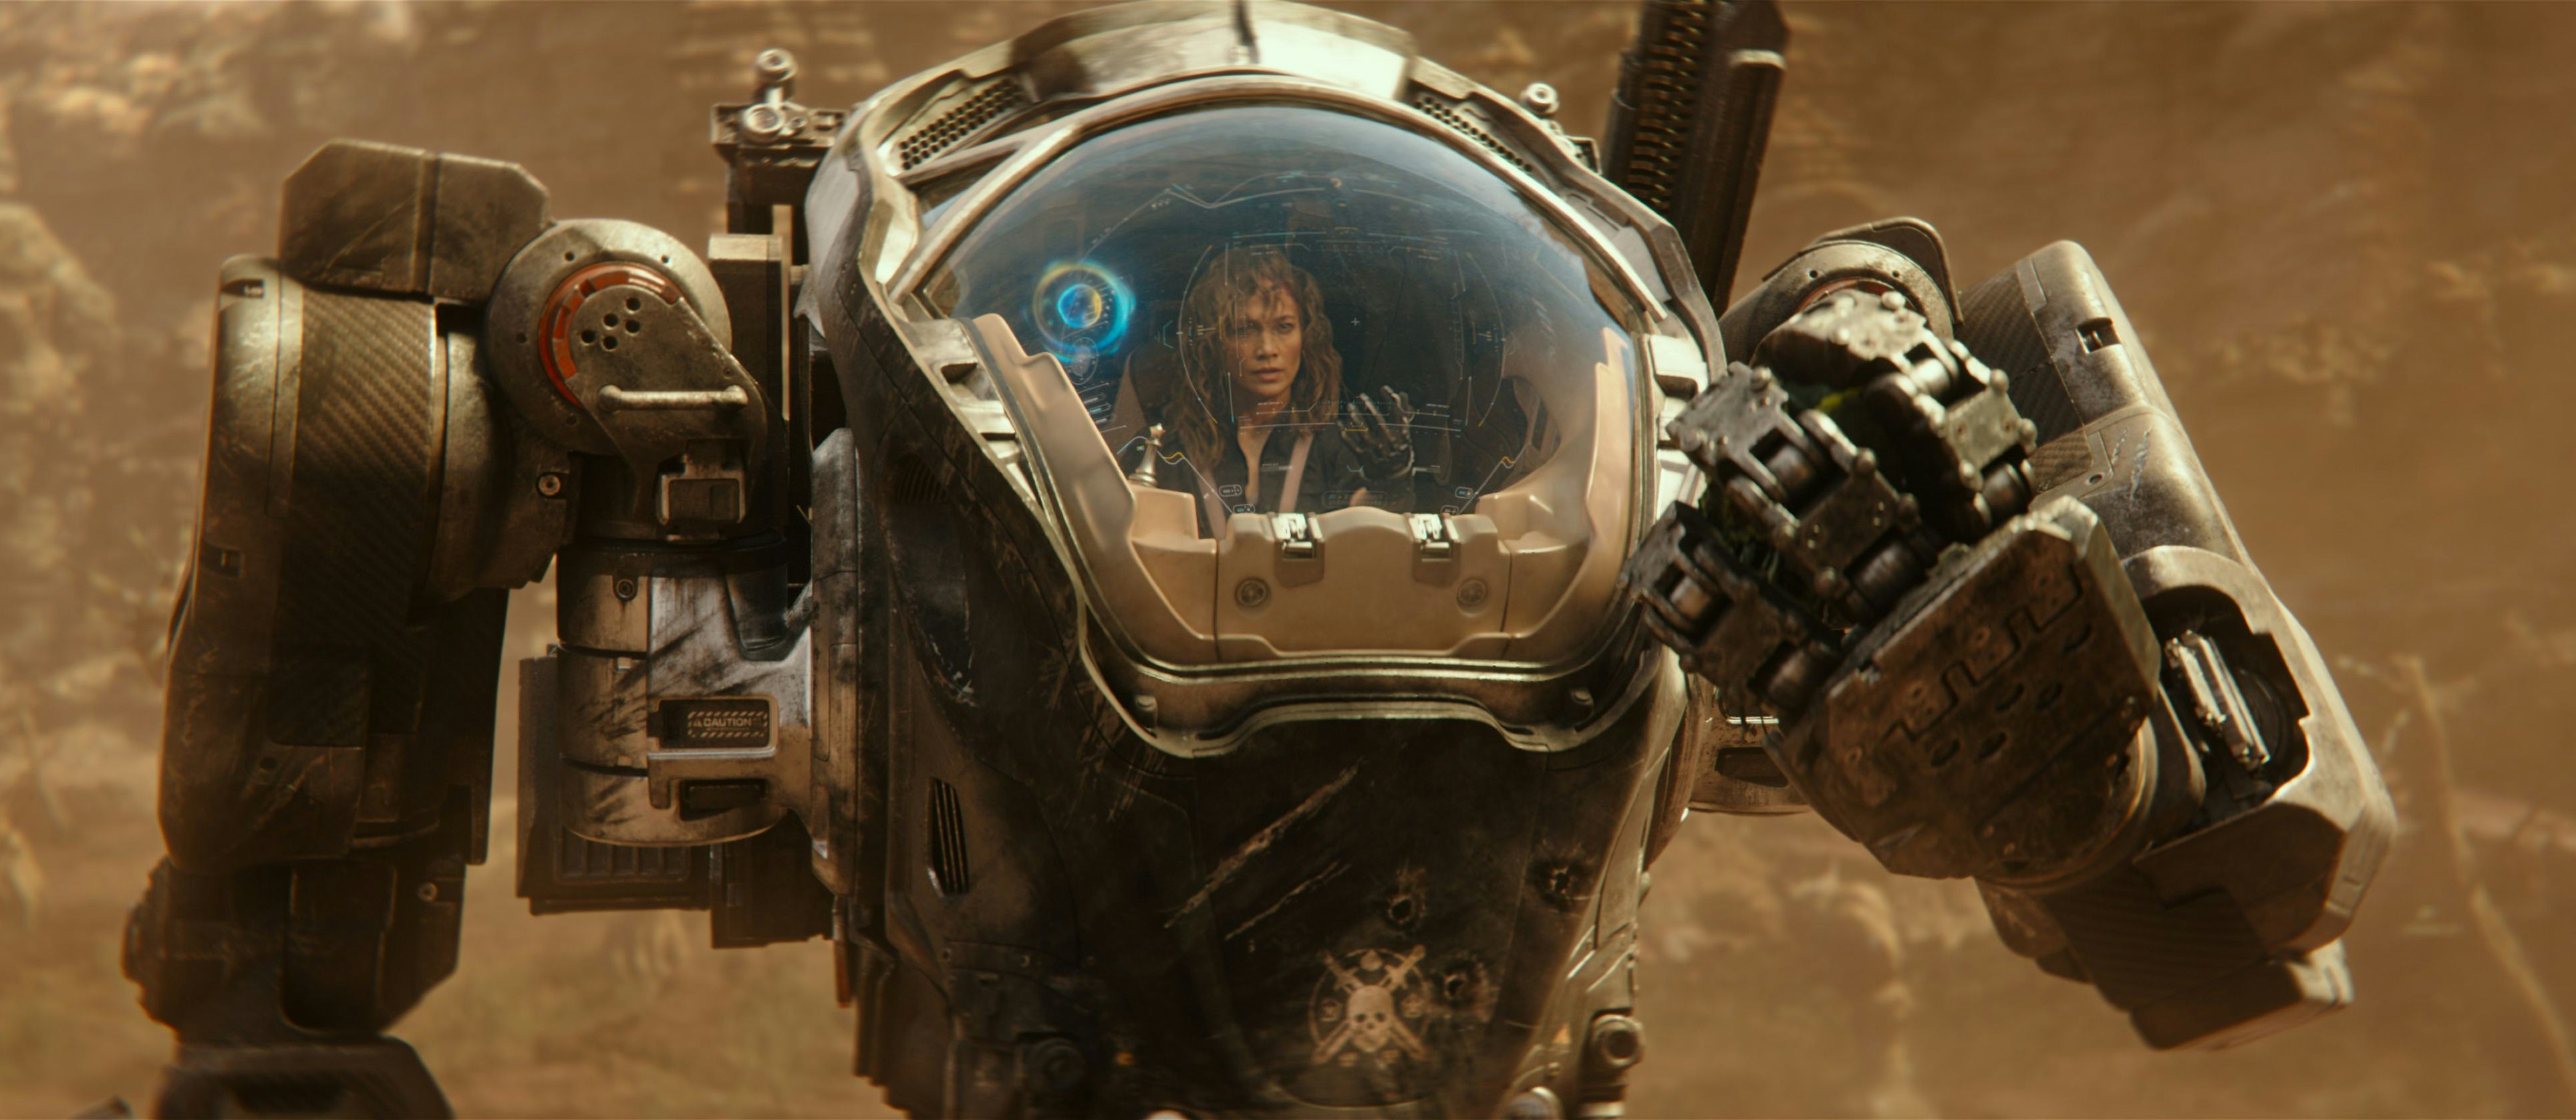 Wird zwischenzeitlich auf einen anderen Planeten gespült, ehe sie die Welt retten kann: Jennifer Lopez in "Atlas"